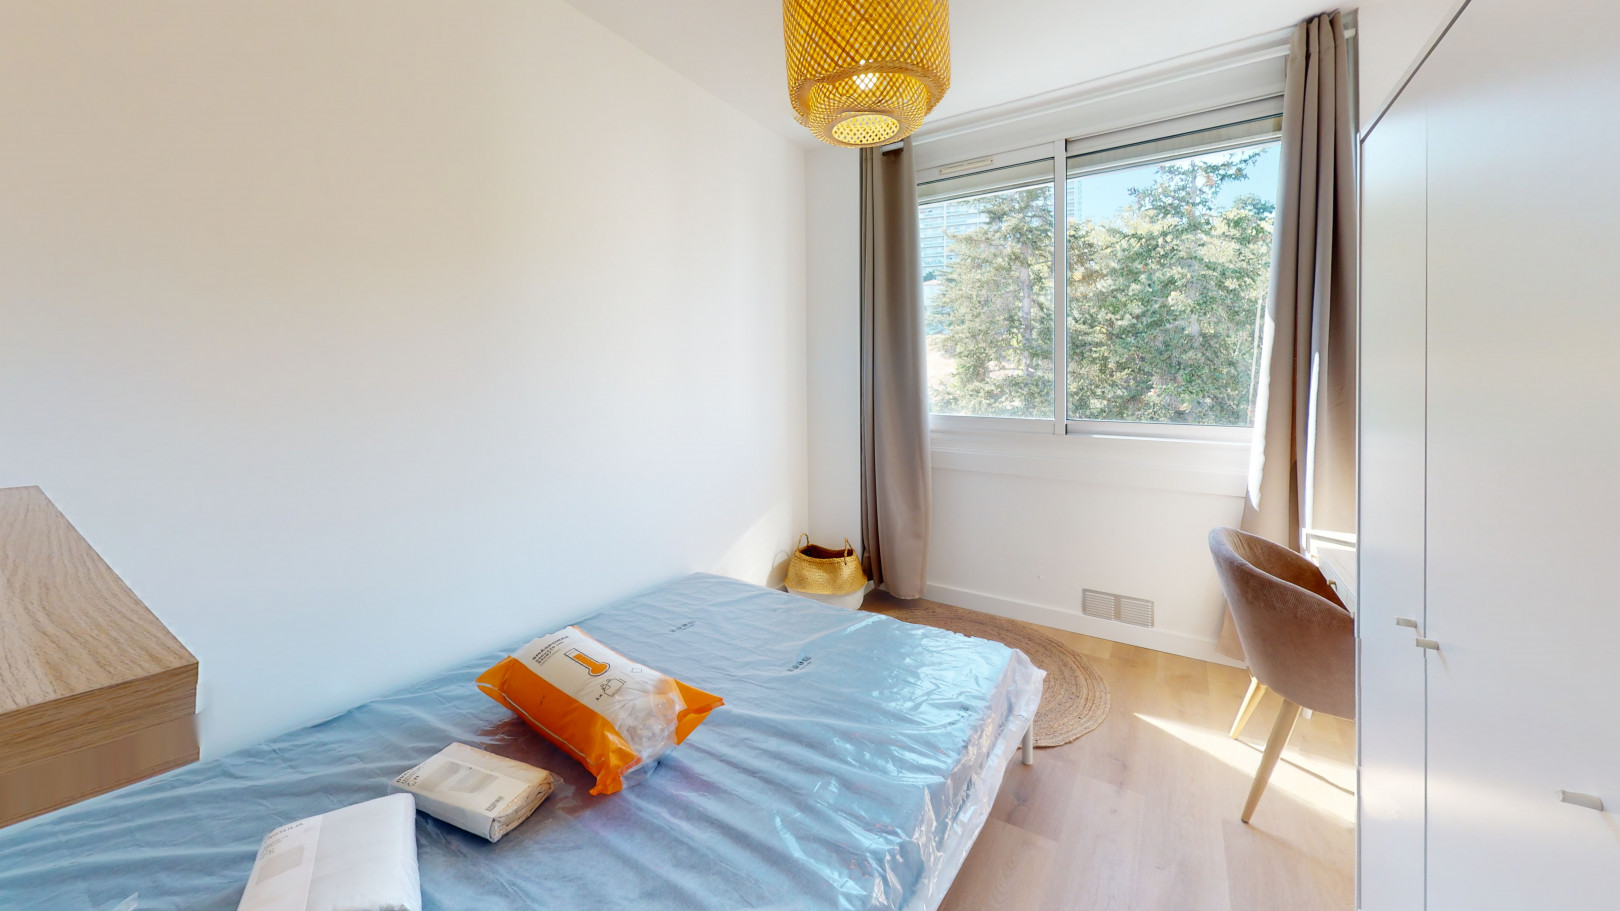 
                                                Colocation
                                                 Colocation de 5 chambres dans un appartement entièrement meublé et rénové avec vue imprenable à Lyon 9